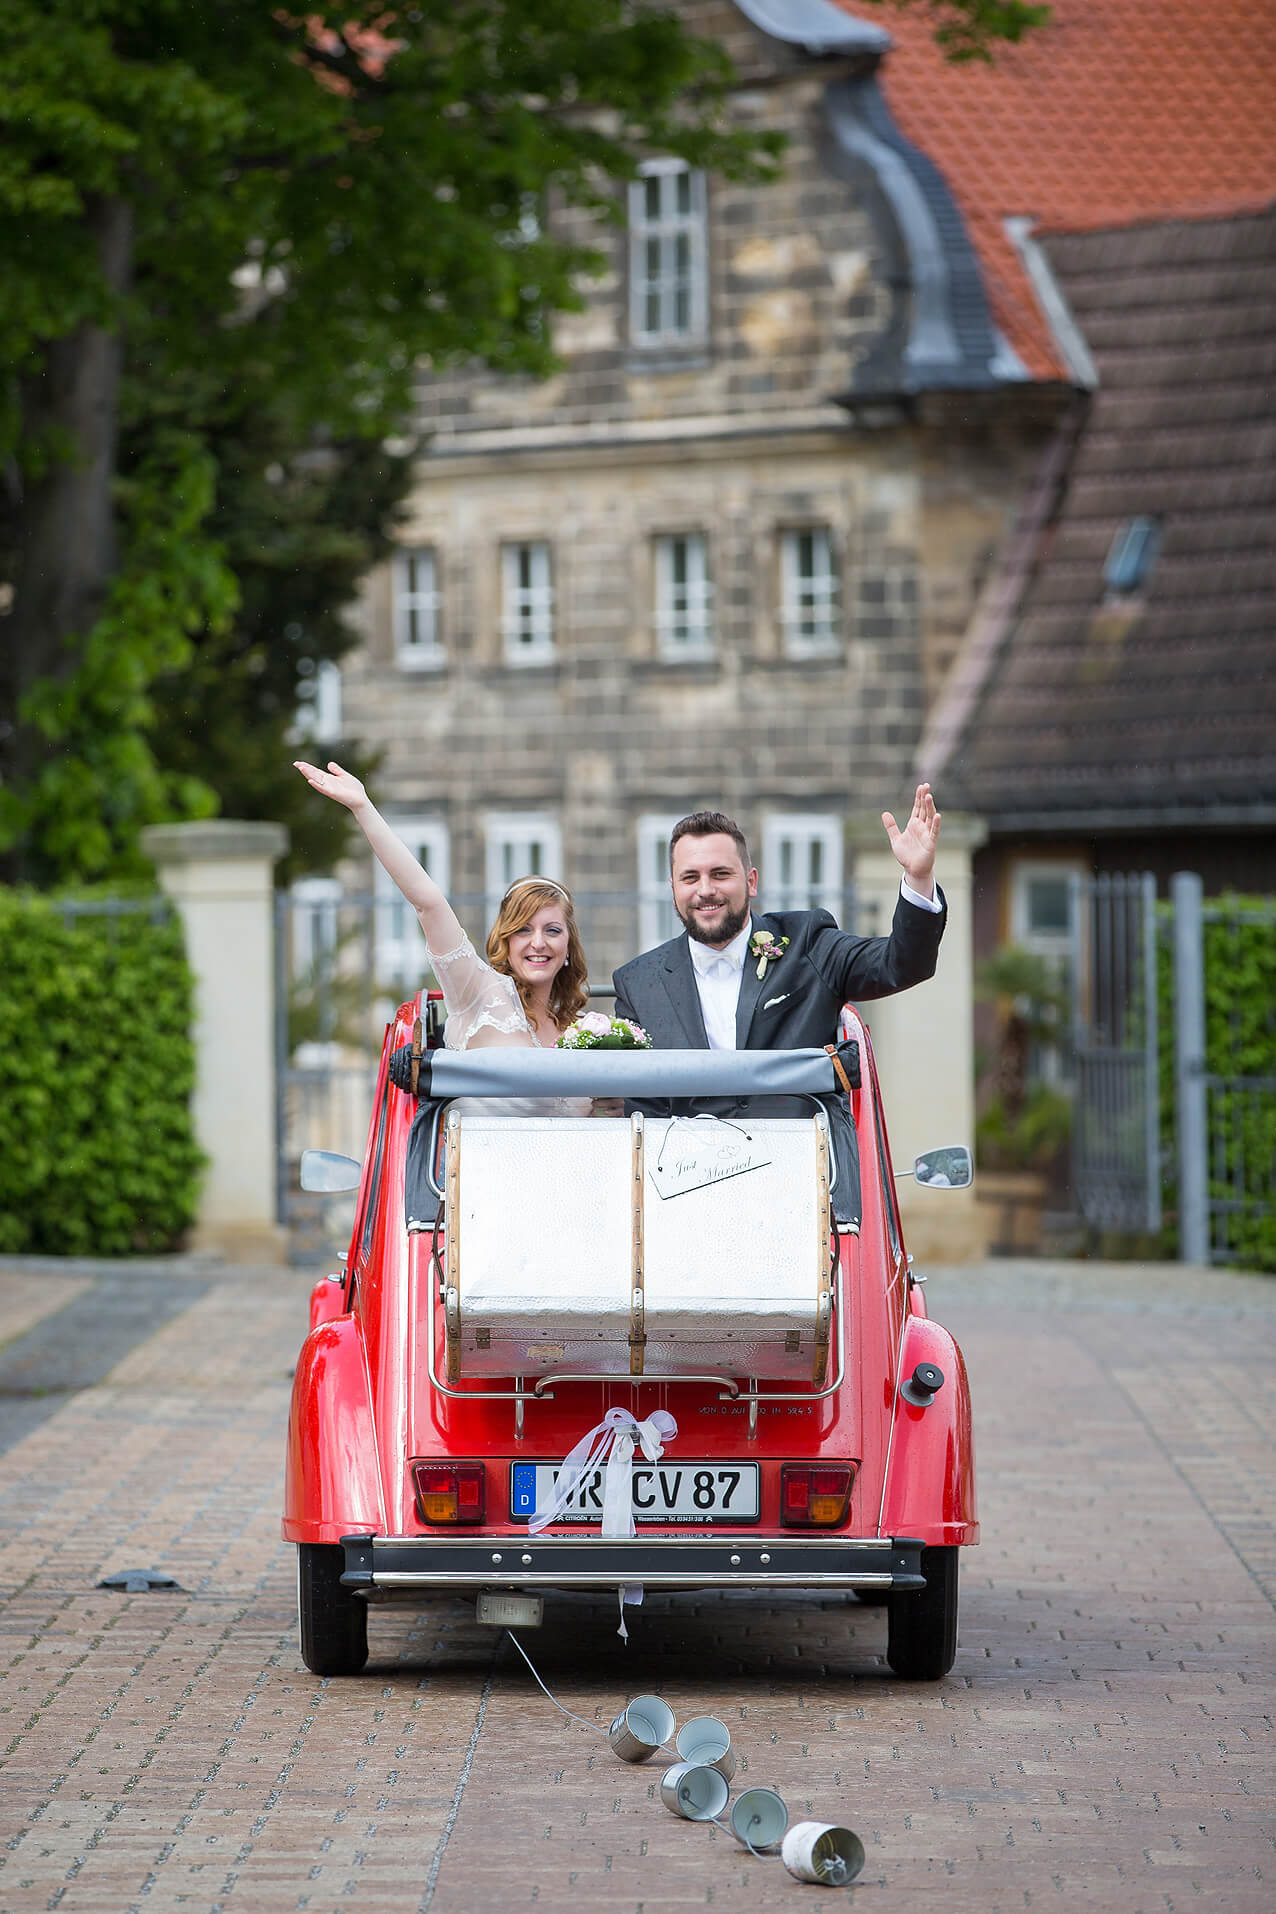 Brautpaar im Hochzeitswagen – eine rote Ente